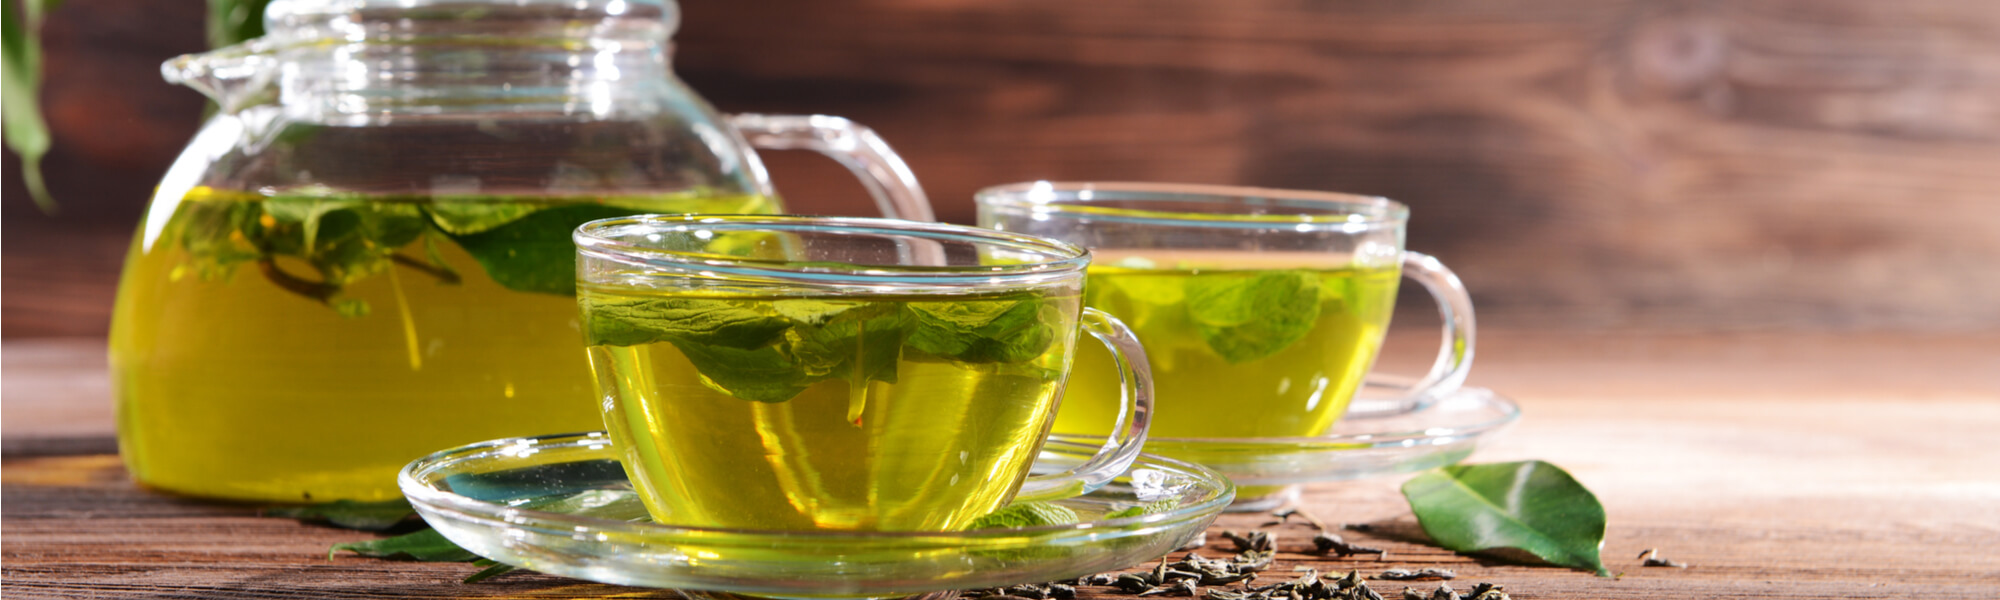 Does Green Tea Break a Fast?